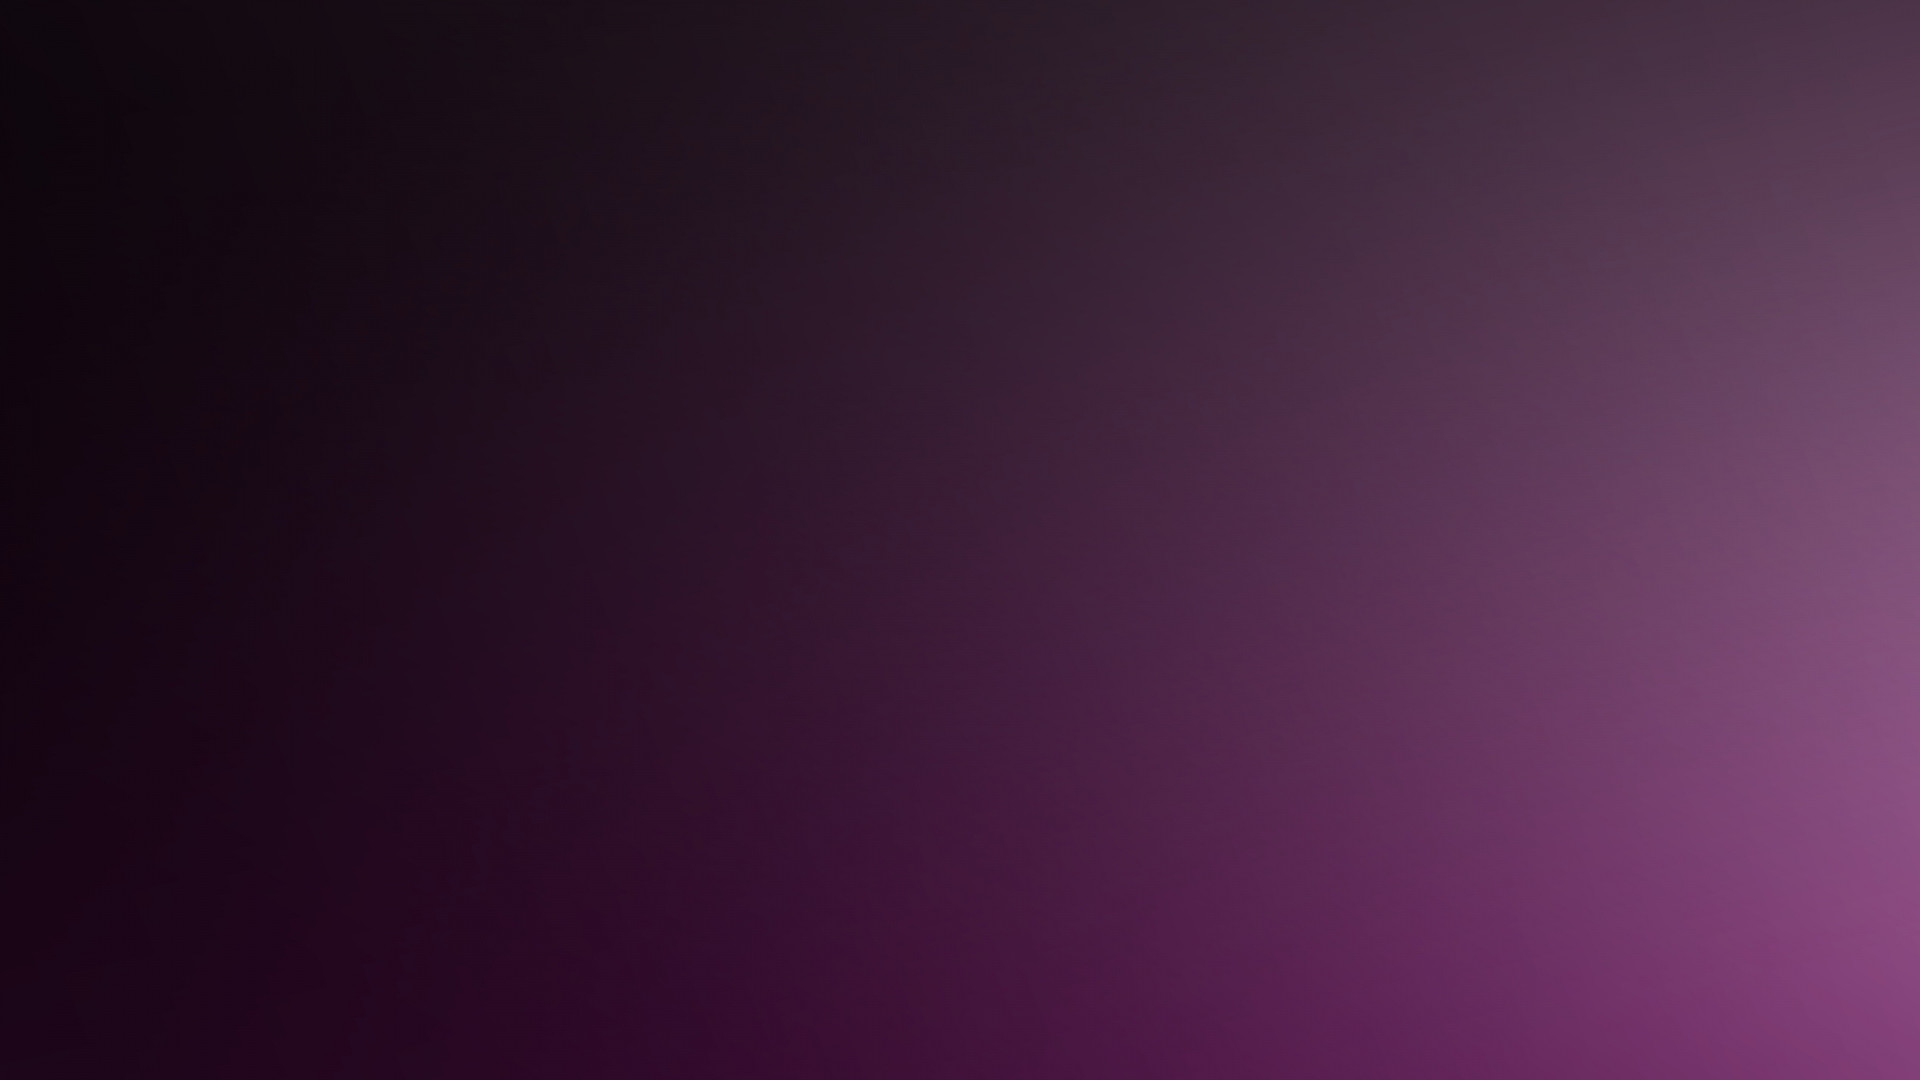 1920x1080 Full HD 1080p Purple Wallpapers HD Desktop Backgrounds  Purple Dark  Shadow Color 65807  